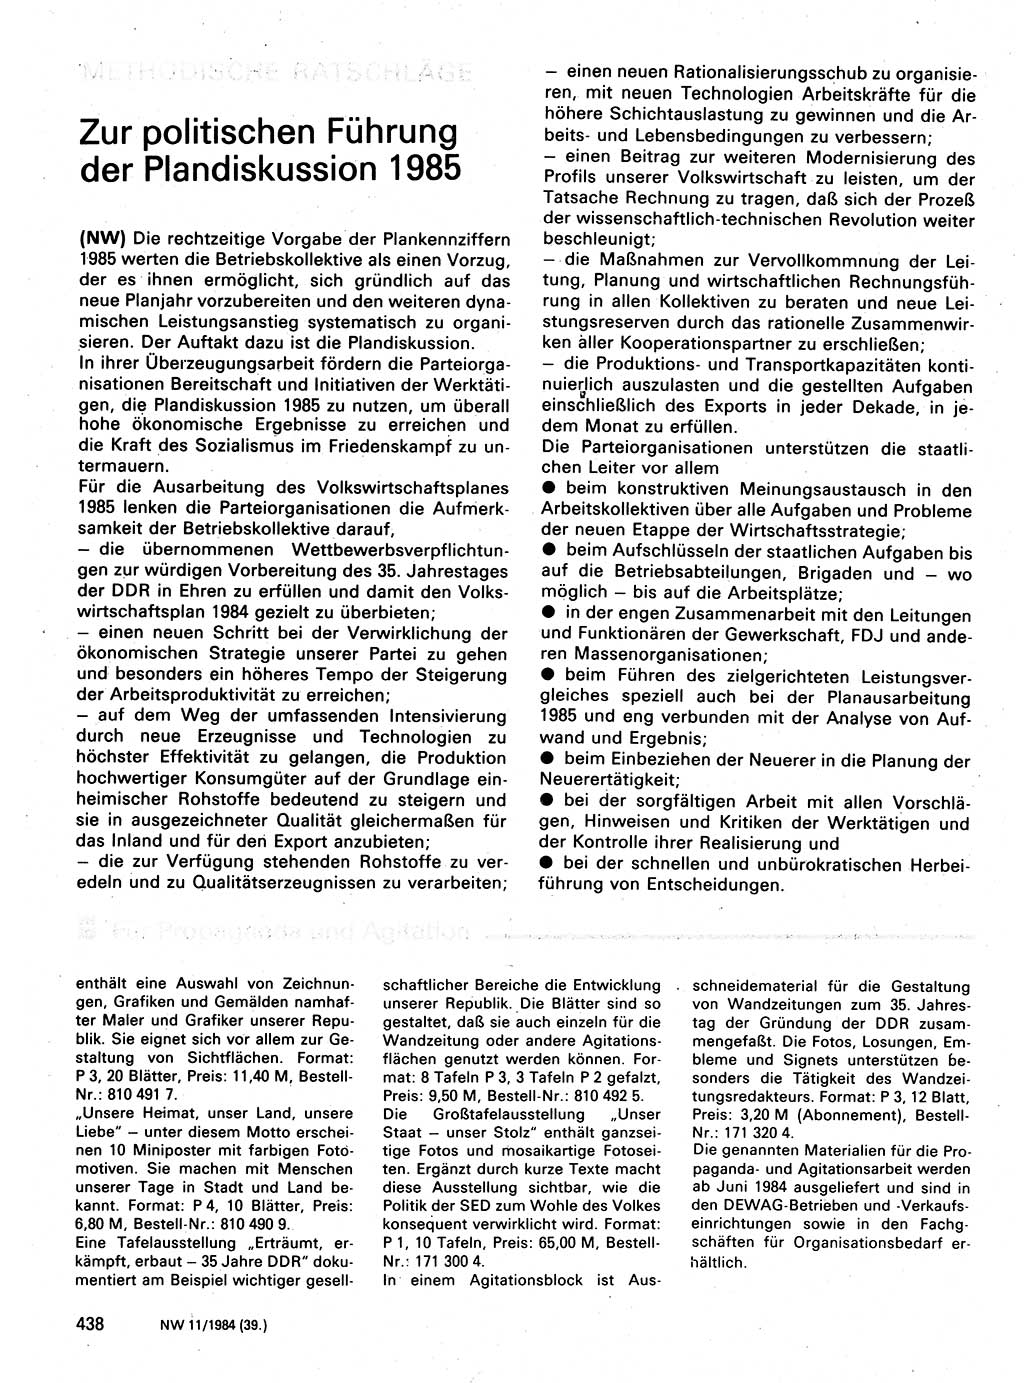 Neuer Weg (NW), Organ des Zentralkomitees (ZK) der SED (Sozialistische Einheitspartei Deutschlands) für Fragen des Parteilebens, 39. Jahrgang [Deutsche Demokratische Republik (DDR)] 1984, Seite 438 (NW ZK SED DDR 1984, S. 438)